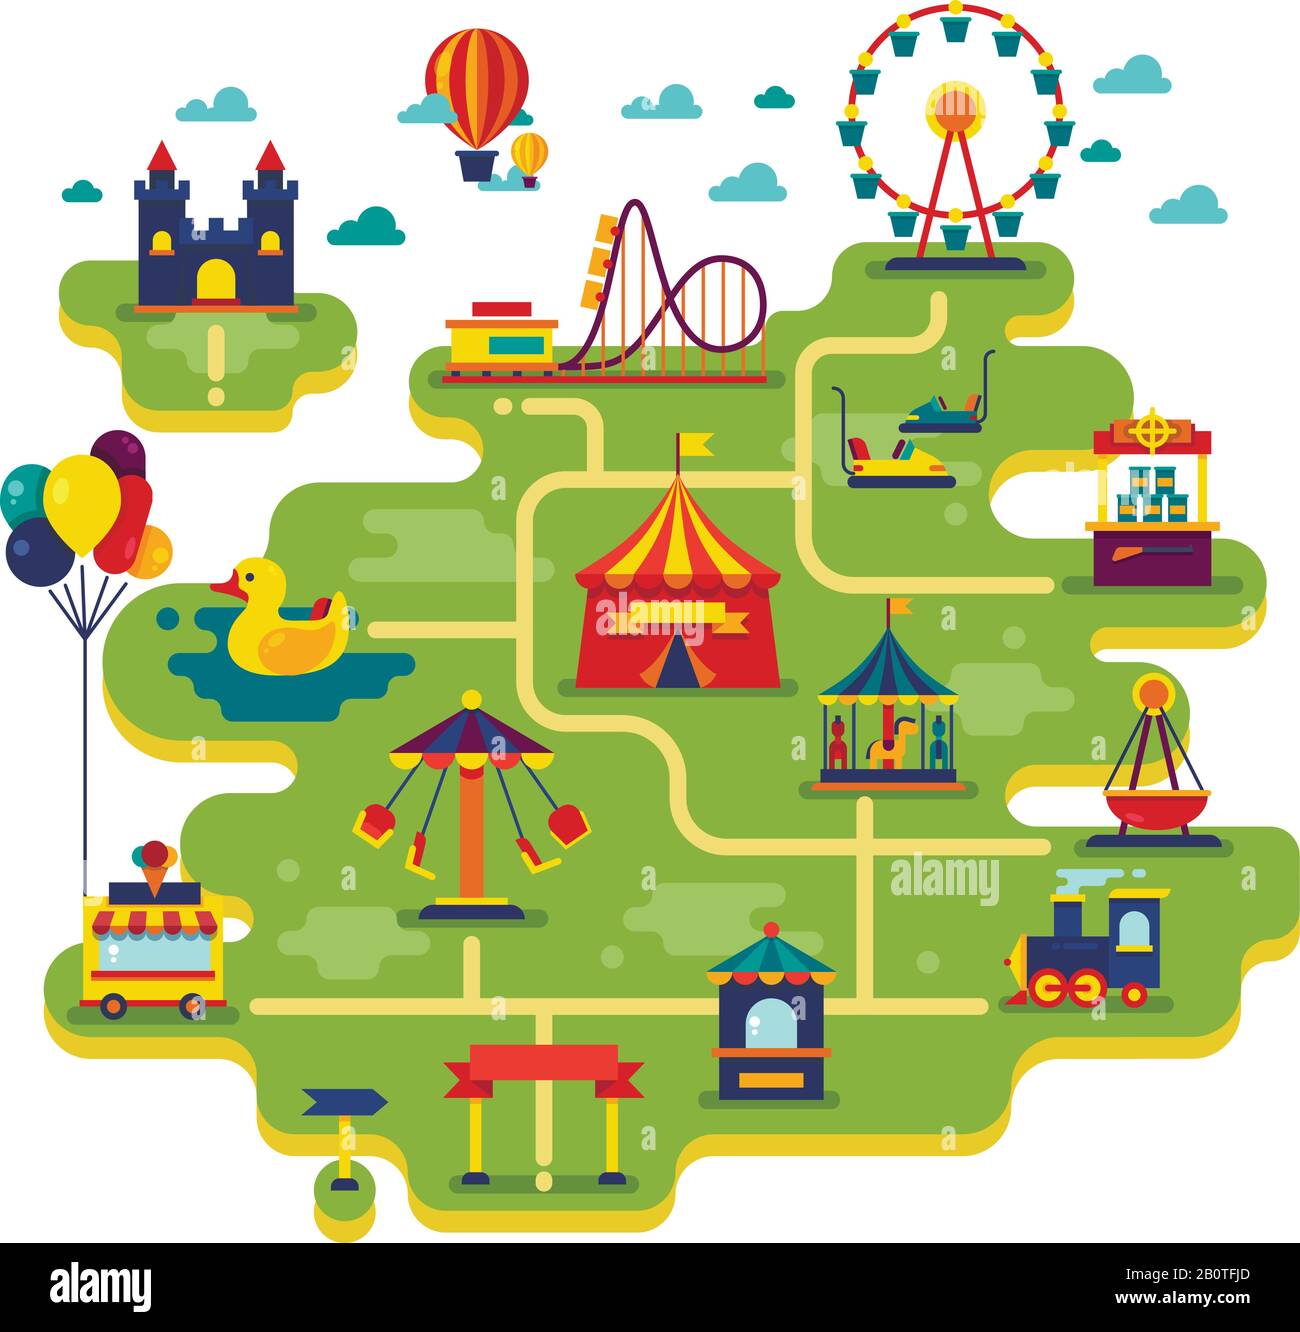 Familienspaß-Freizeitpark Vector Map. Unterhaltung im Hintergrund der Urlaubsvektoren. Abbildung: Festival-Messe-Unterhaltung und Vergnügungspark Stock Vektor